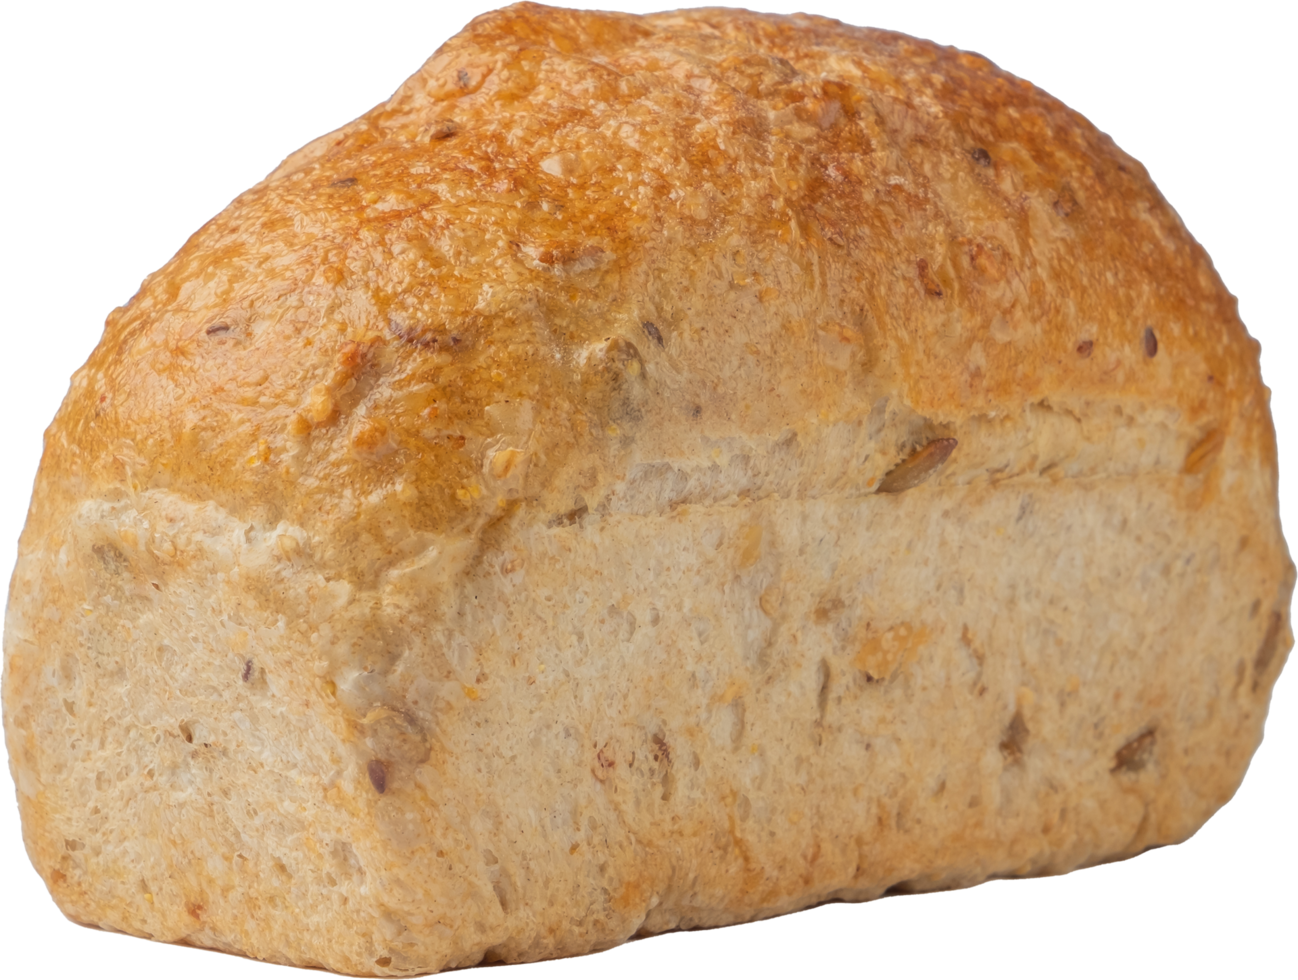 recorte pan de trigo integral sobre fondo transparente. png